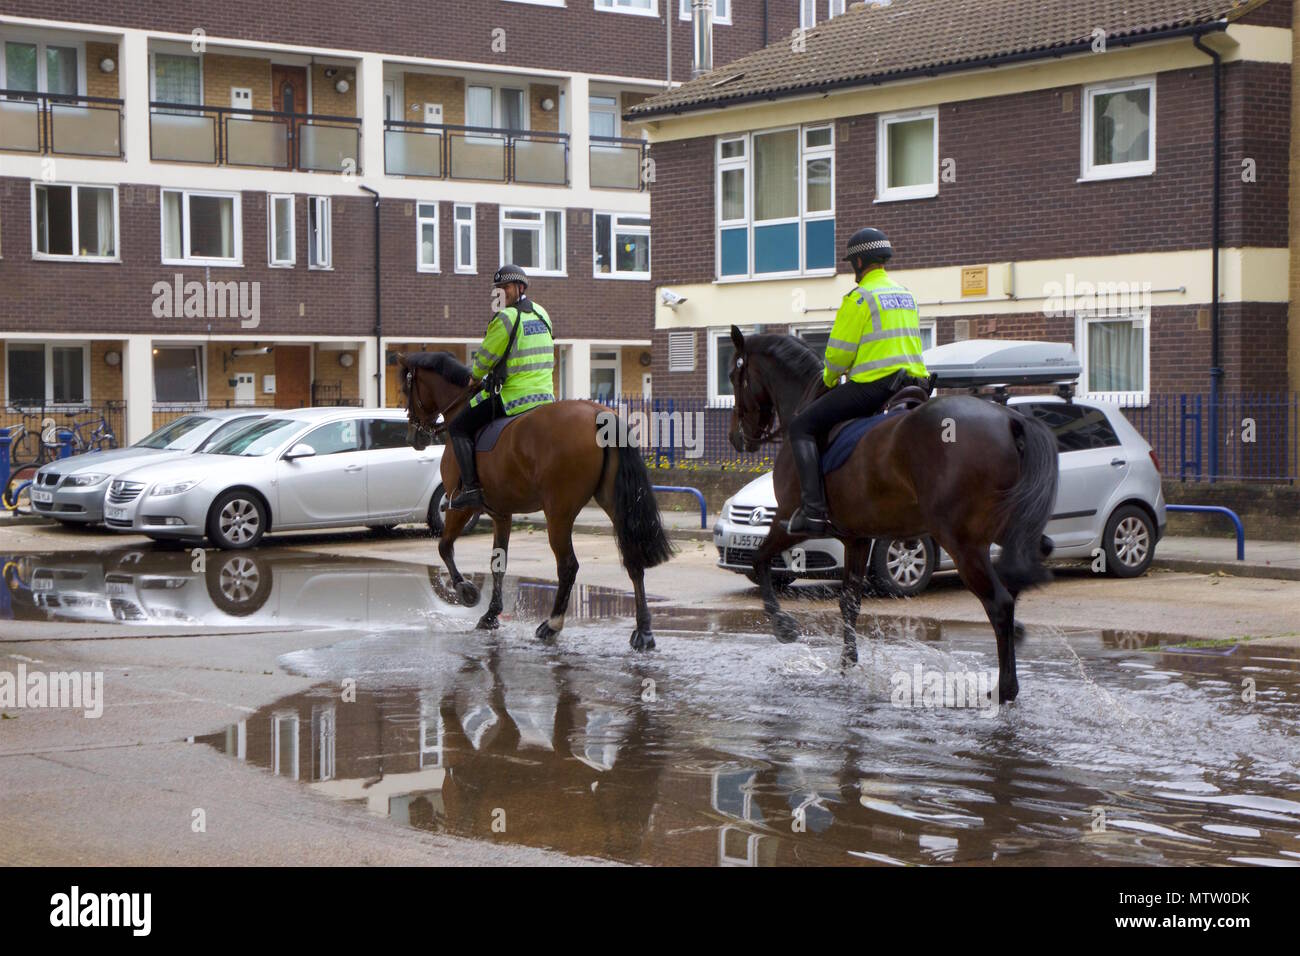 Deux policiers métropolitains qui sont des chevaux de course au trot dans une flaque d'eau sur le chemin de l'équitation dans la région de Bow, Tower Hamlets, London Banque D'Images